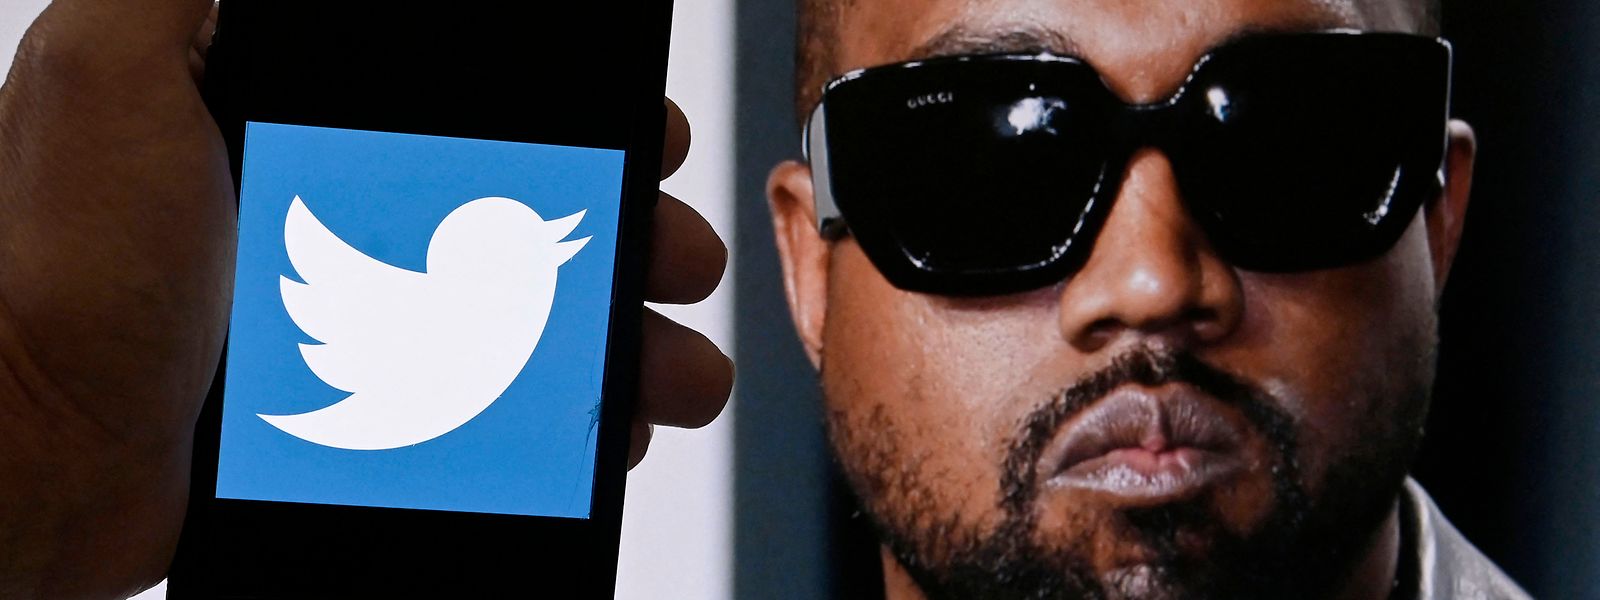 Der Twitter-Account von US-Rapper Kanye West wurde erneut gesperrt.